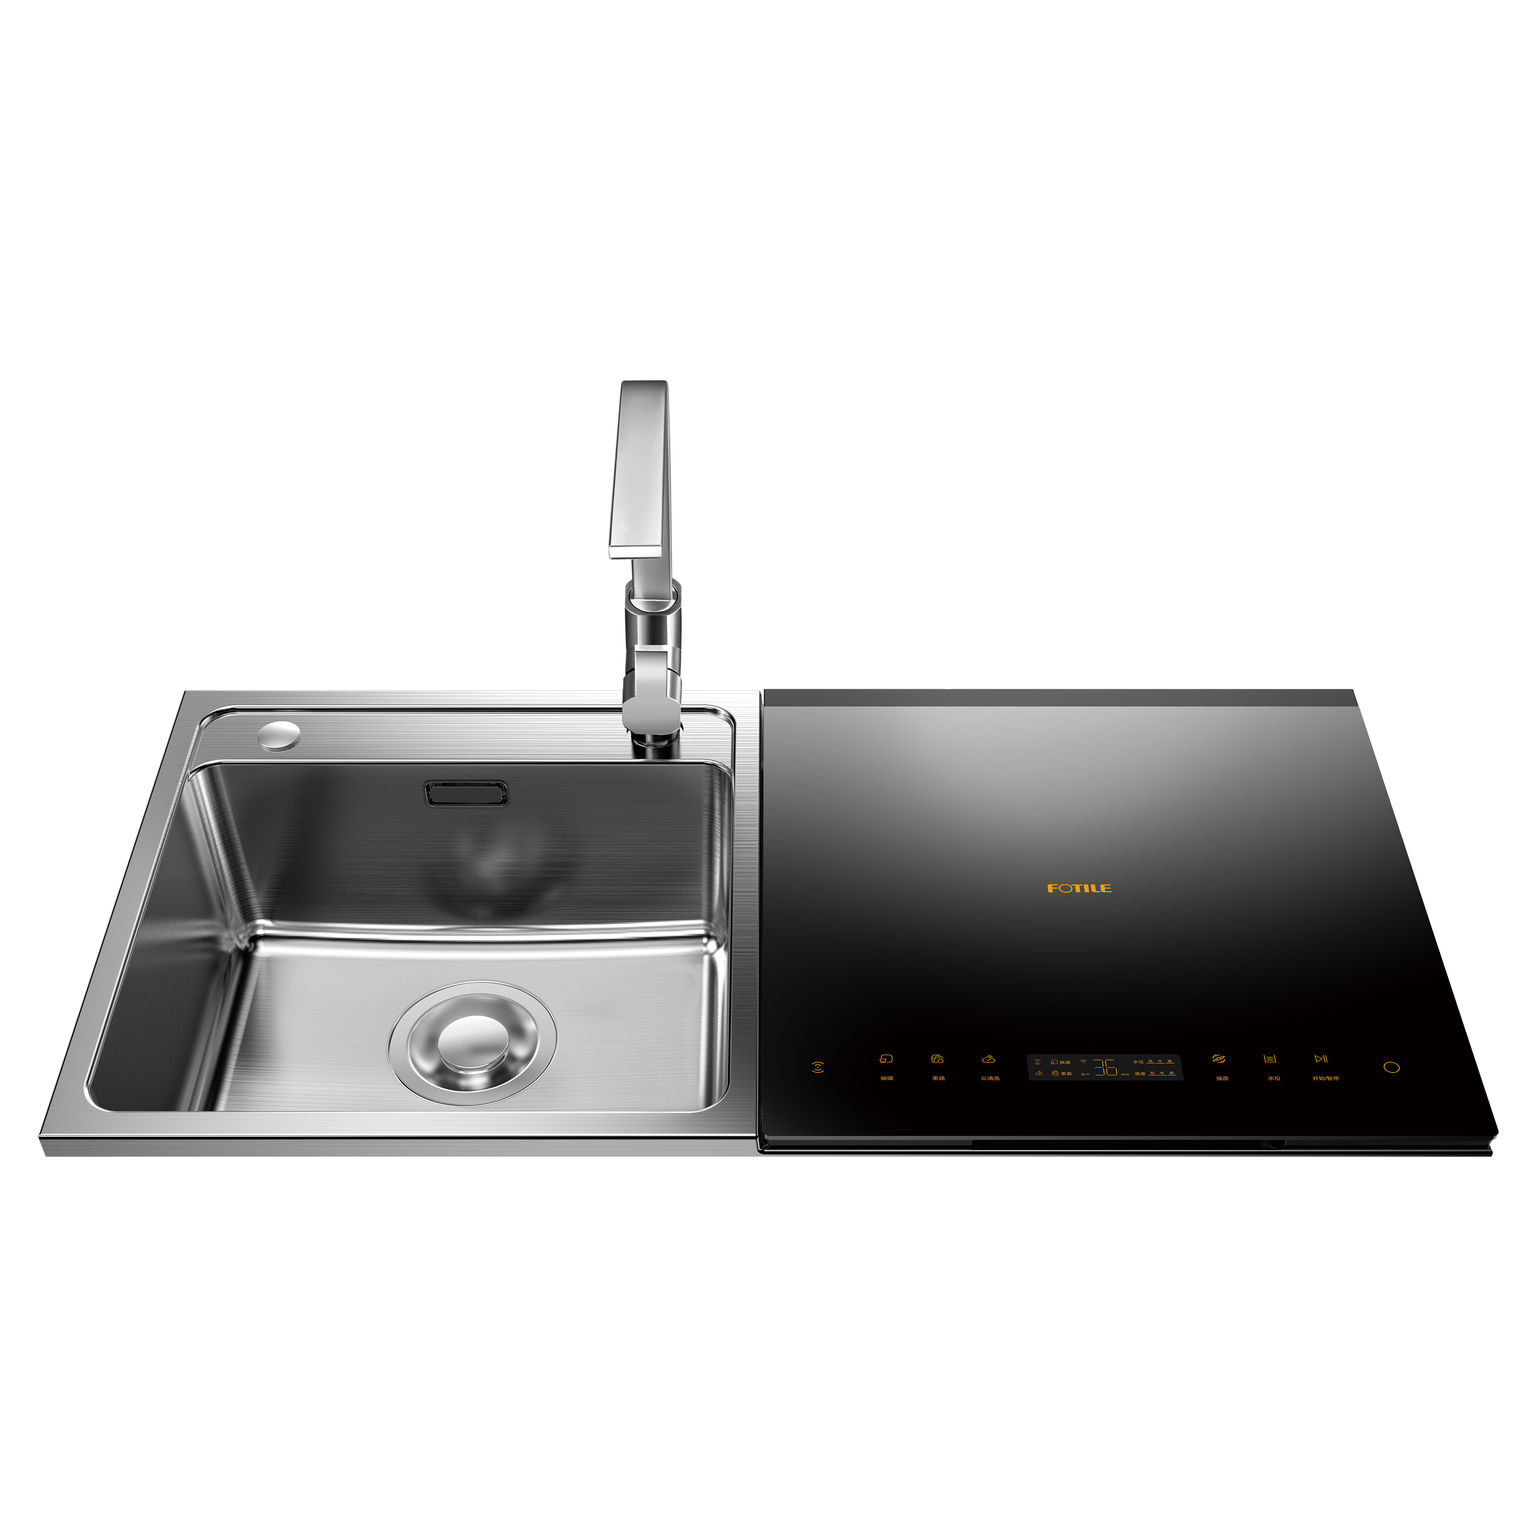  Fotile sink dishwasher  JBSD2T Q8 iF WORLD DESIGN GUIDE